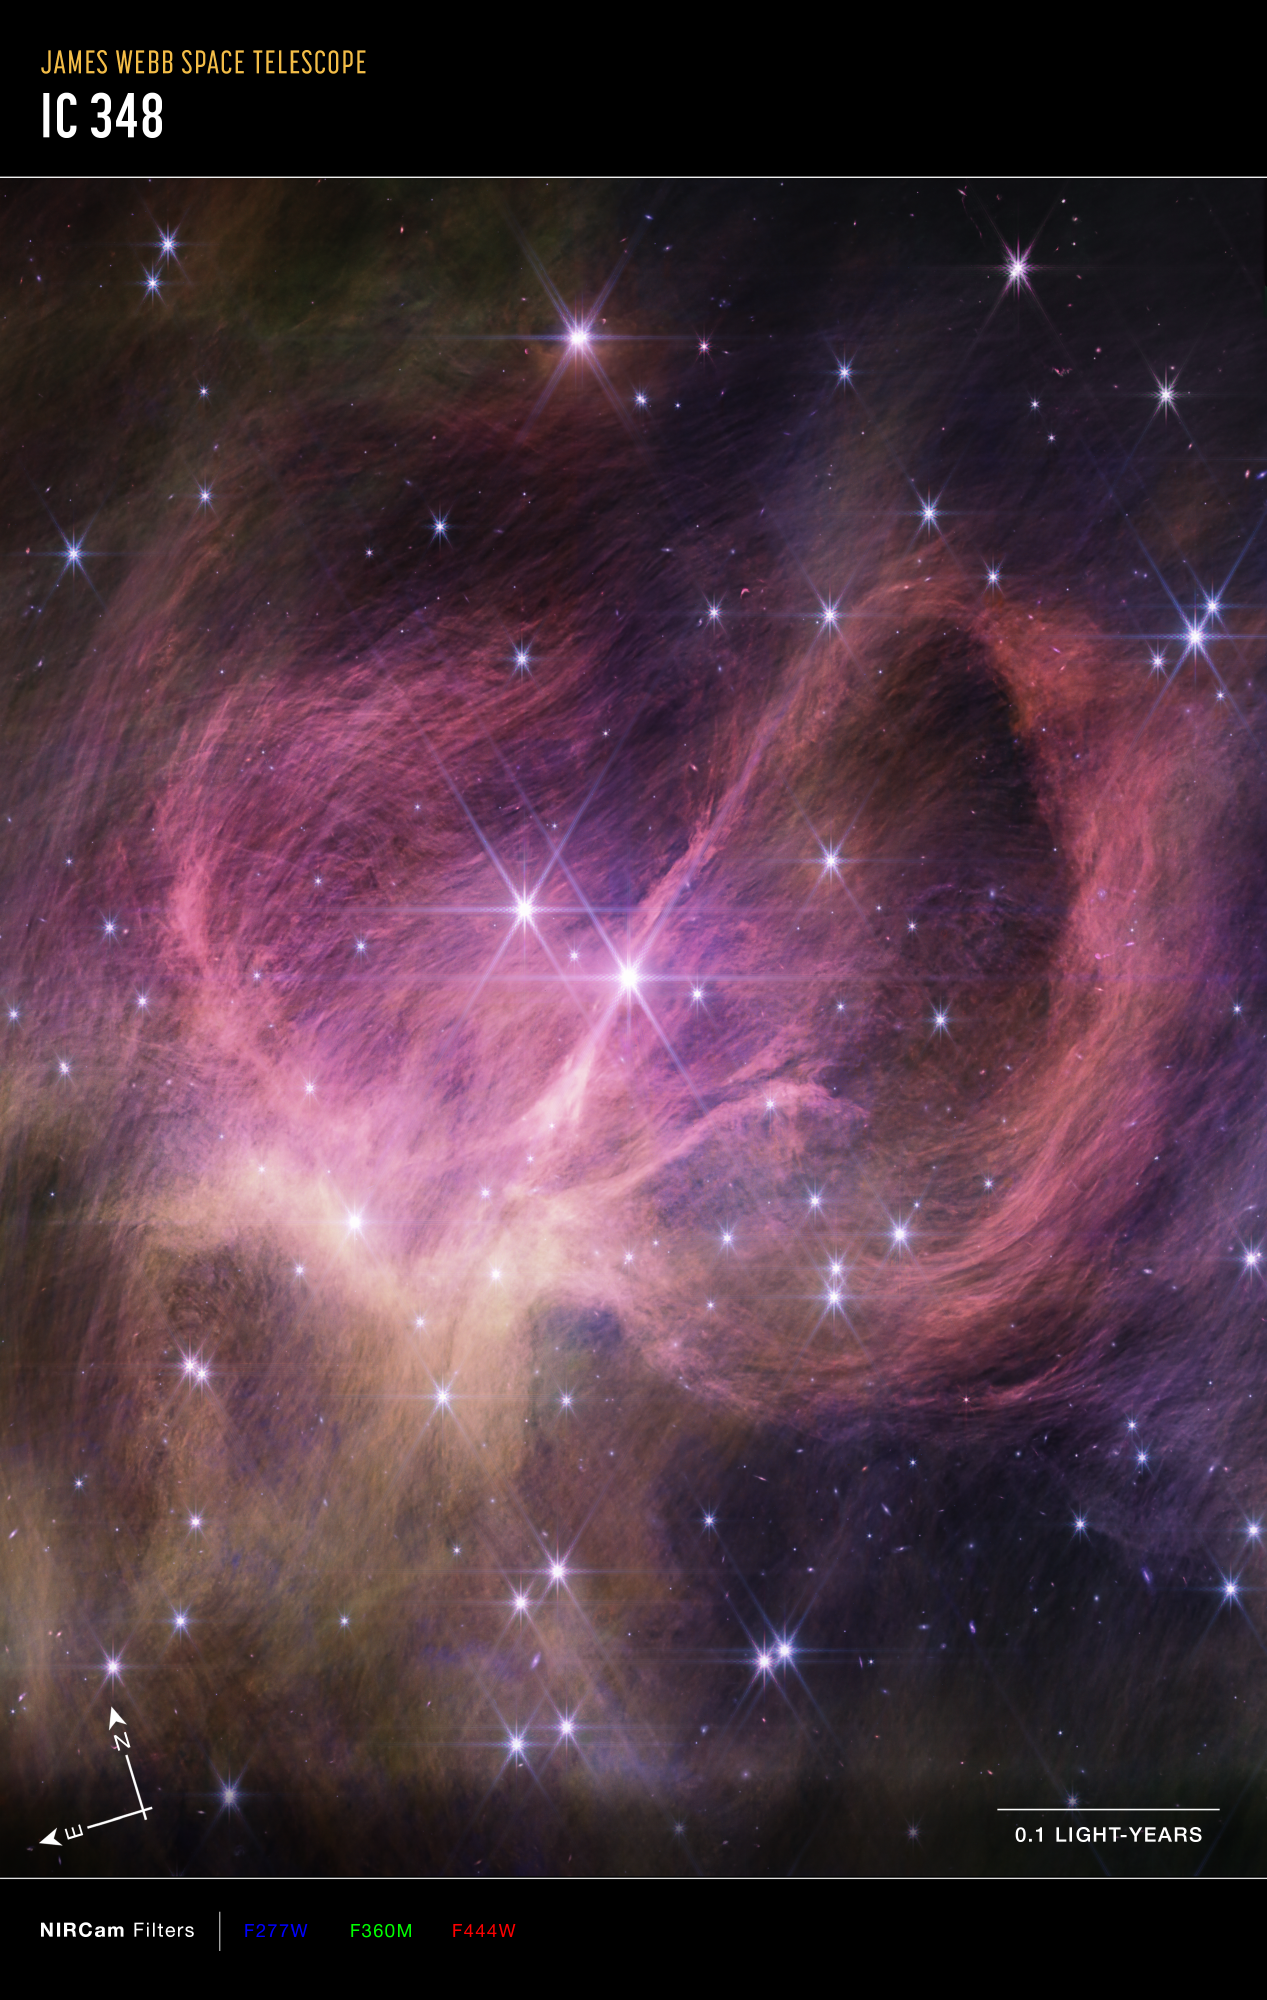 Na ilustracji (1): Otwarta gromada gwiazdowa IC 348 sfotografowana w bliskiej podczerwieni przez kamerę NIRCam w Teleskopie Webba z zaznaczonymi kierunkami na niebie N-E (północ-wschód) i transformacją filtrów w bliskiej podczerwieni o średnich długościach fali 2,77μm / 3,60μm / 4,44μm odpowiednio do barw niebieska / zielona / czerwona w zakresie widzialnym. Pole  widzenia tego zdjęcia obejmuje centralny fragment otwartej gromady gwiazdowej IC 348 o bokach 0,5 l.św. poziomo x 0,8 l.św. pionowo. Źródło: NASA, ESA, CSA, STScI, Kevin Luhman (Pennsylvania State University), Catarina Alves de Oliveira (European Space Agency)